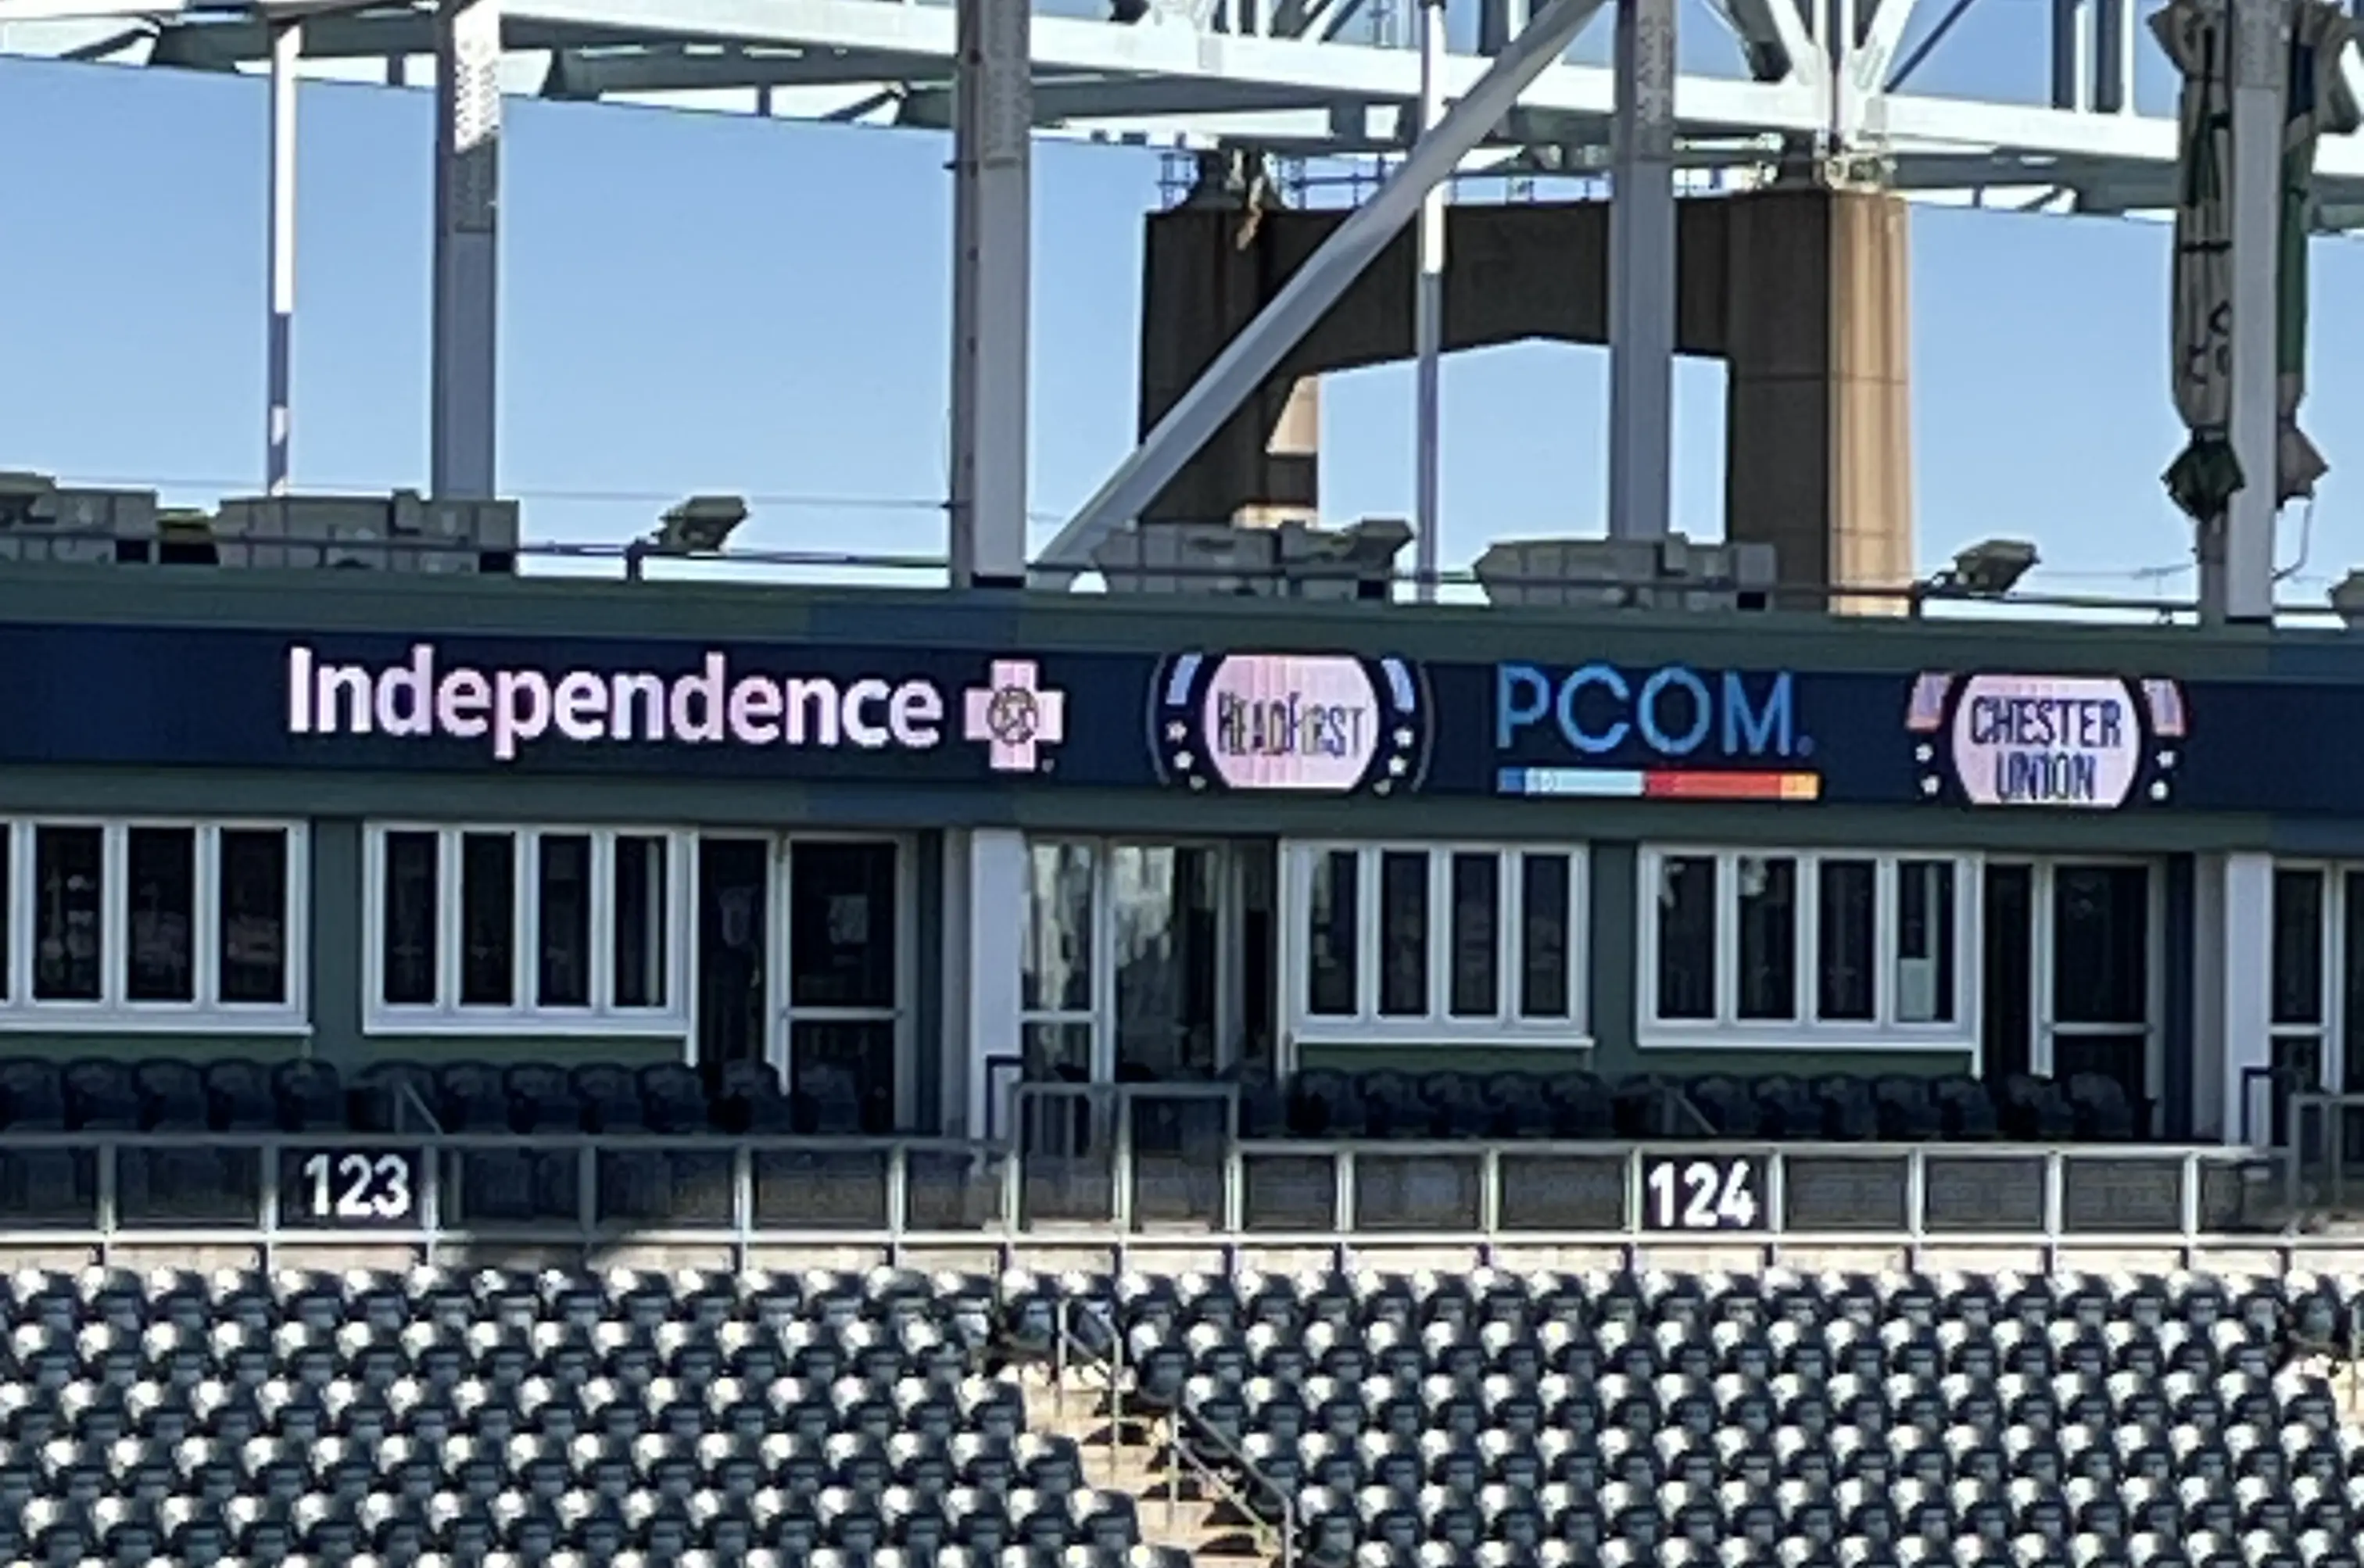 PCOM sign in a stadium.